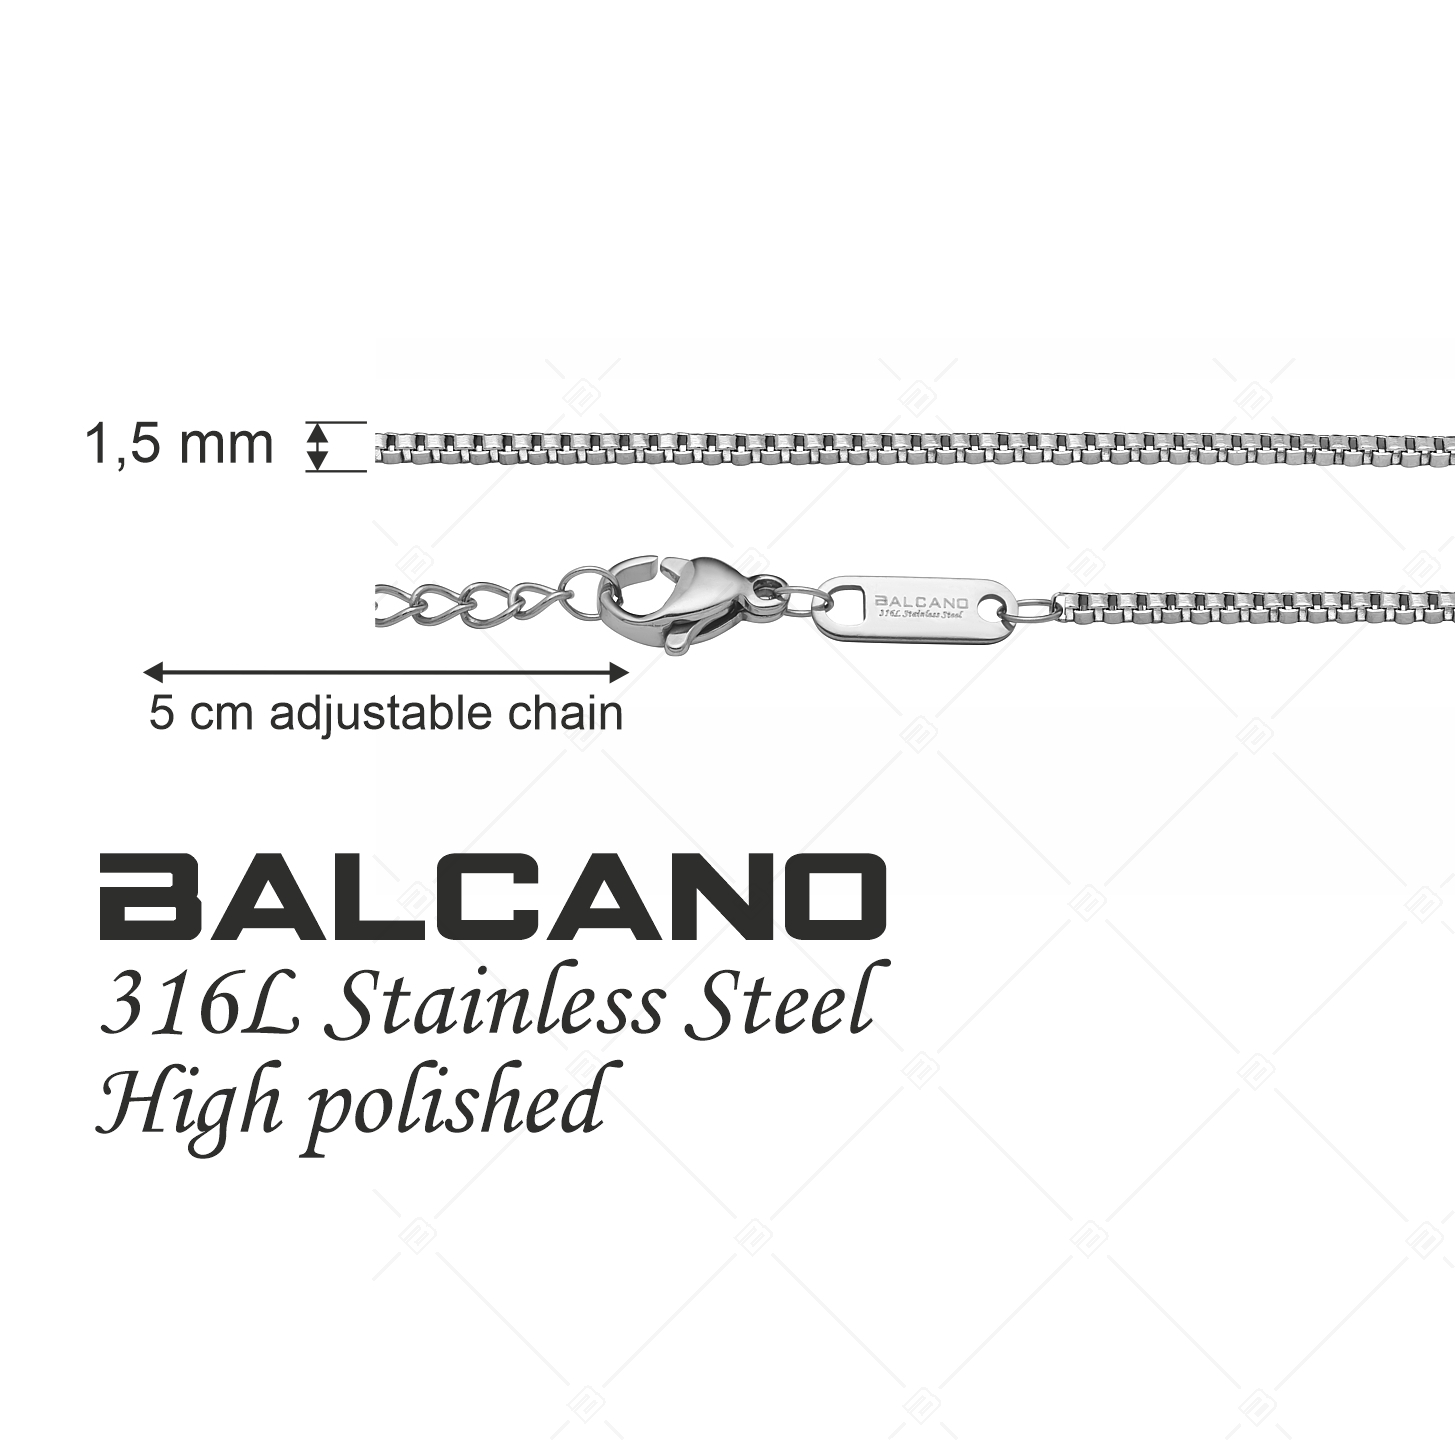 BALCANO - Venetian / Edelstahl Venezianer Kette mit Hochglanzpolierung - 1,5 mm (341292BC97)